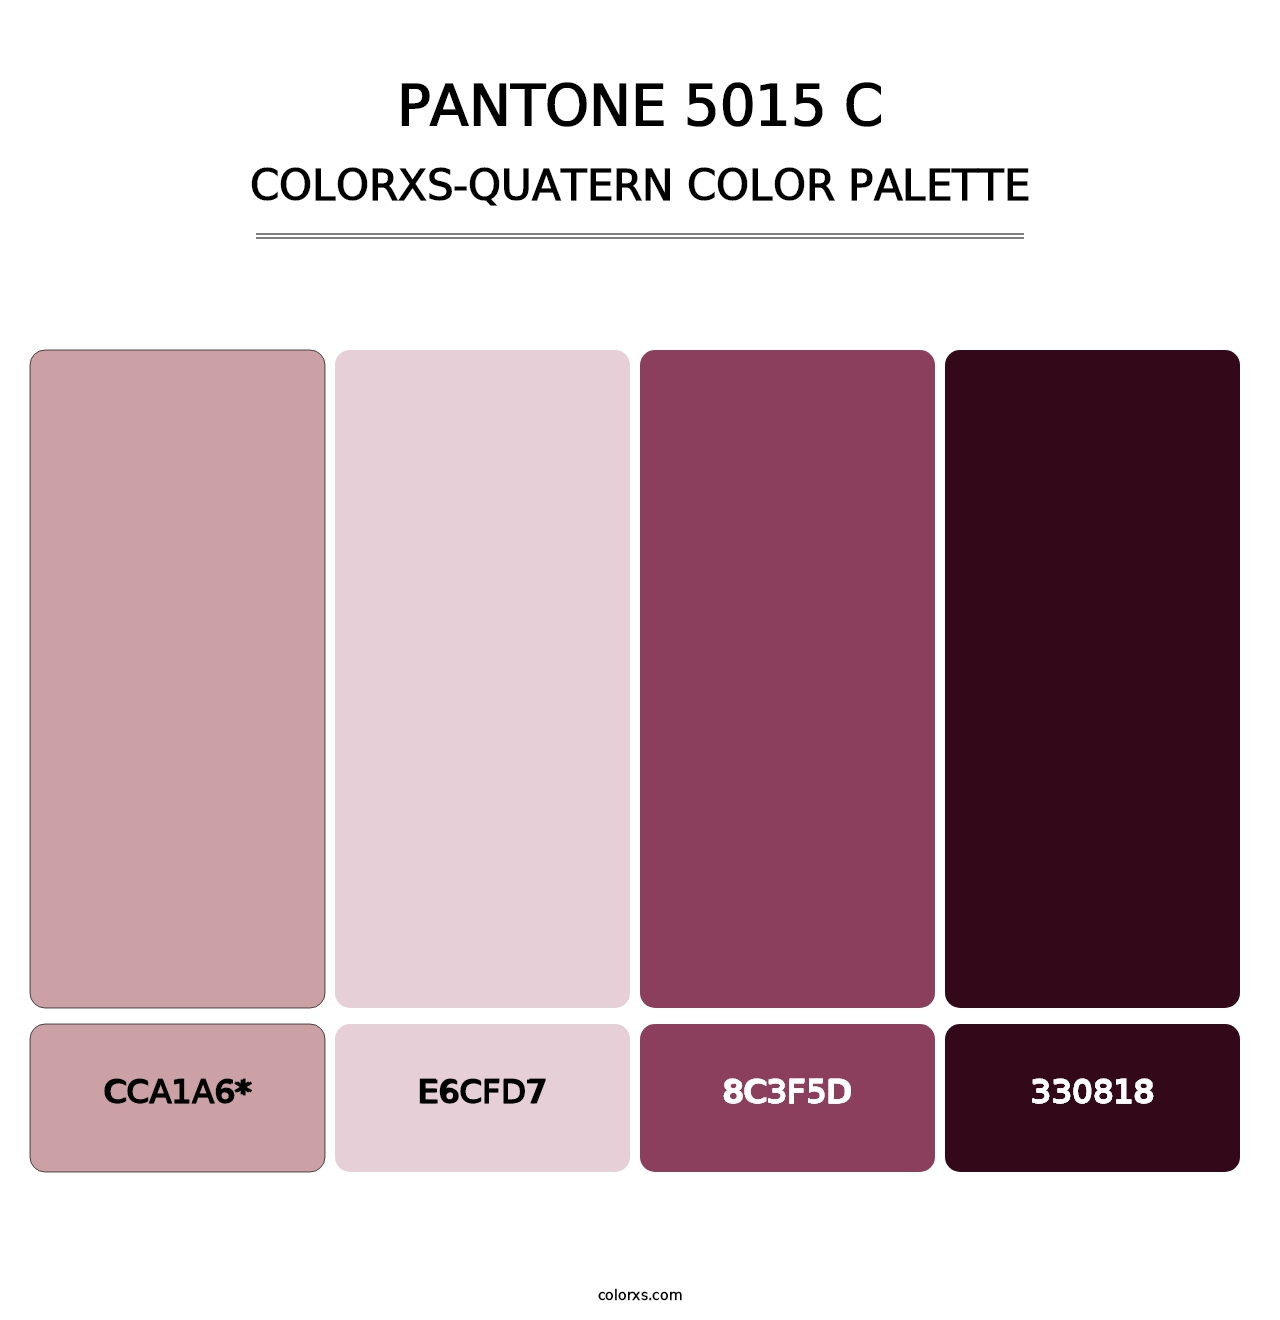 PANTONE 5015 C - Colorxs Quatern Palette